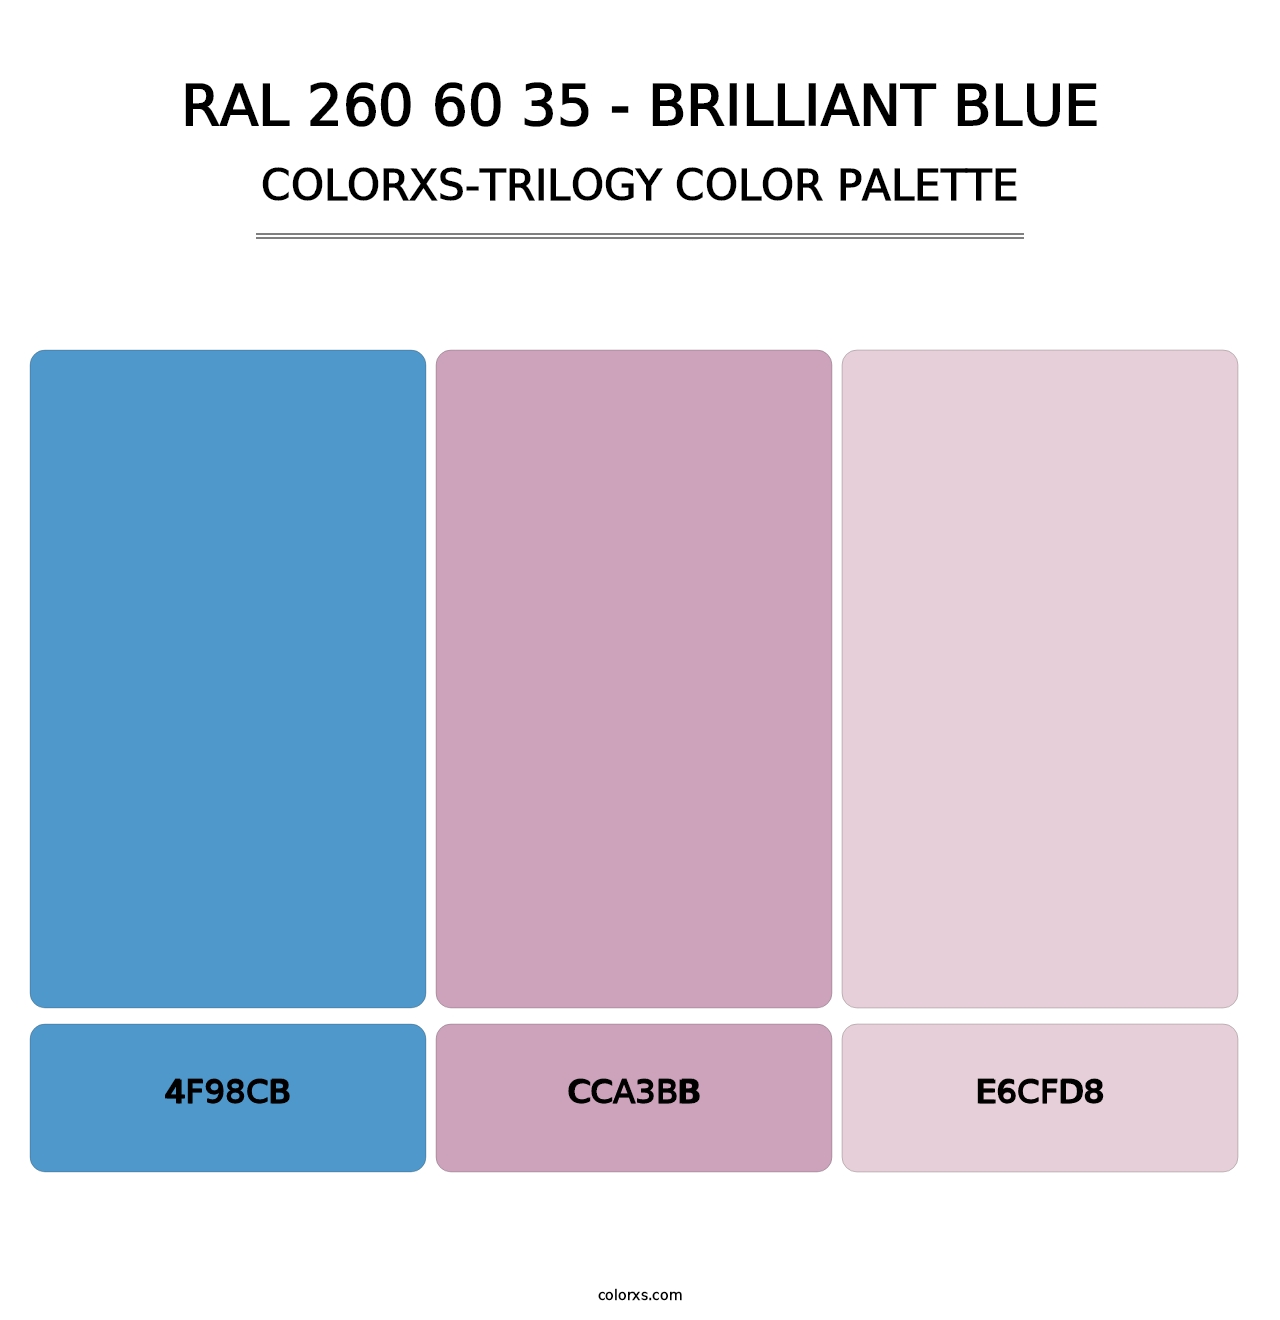 RAL 260 60 35 - Brilliant Blue - Colorxs Trilogy Palette